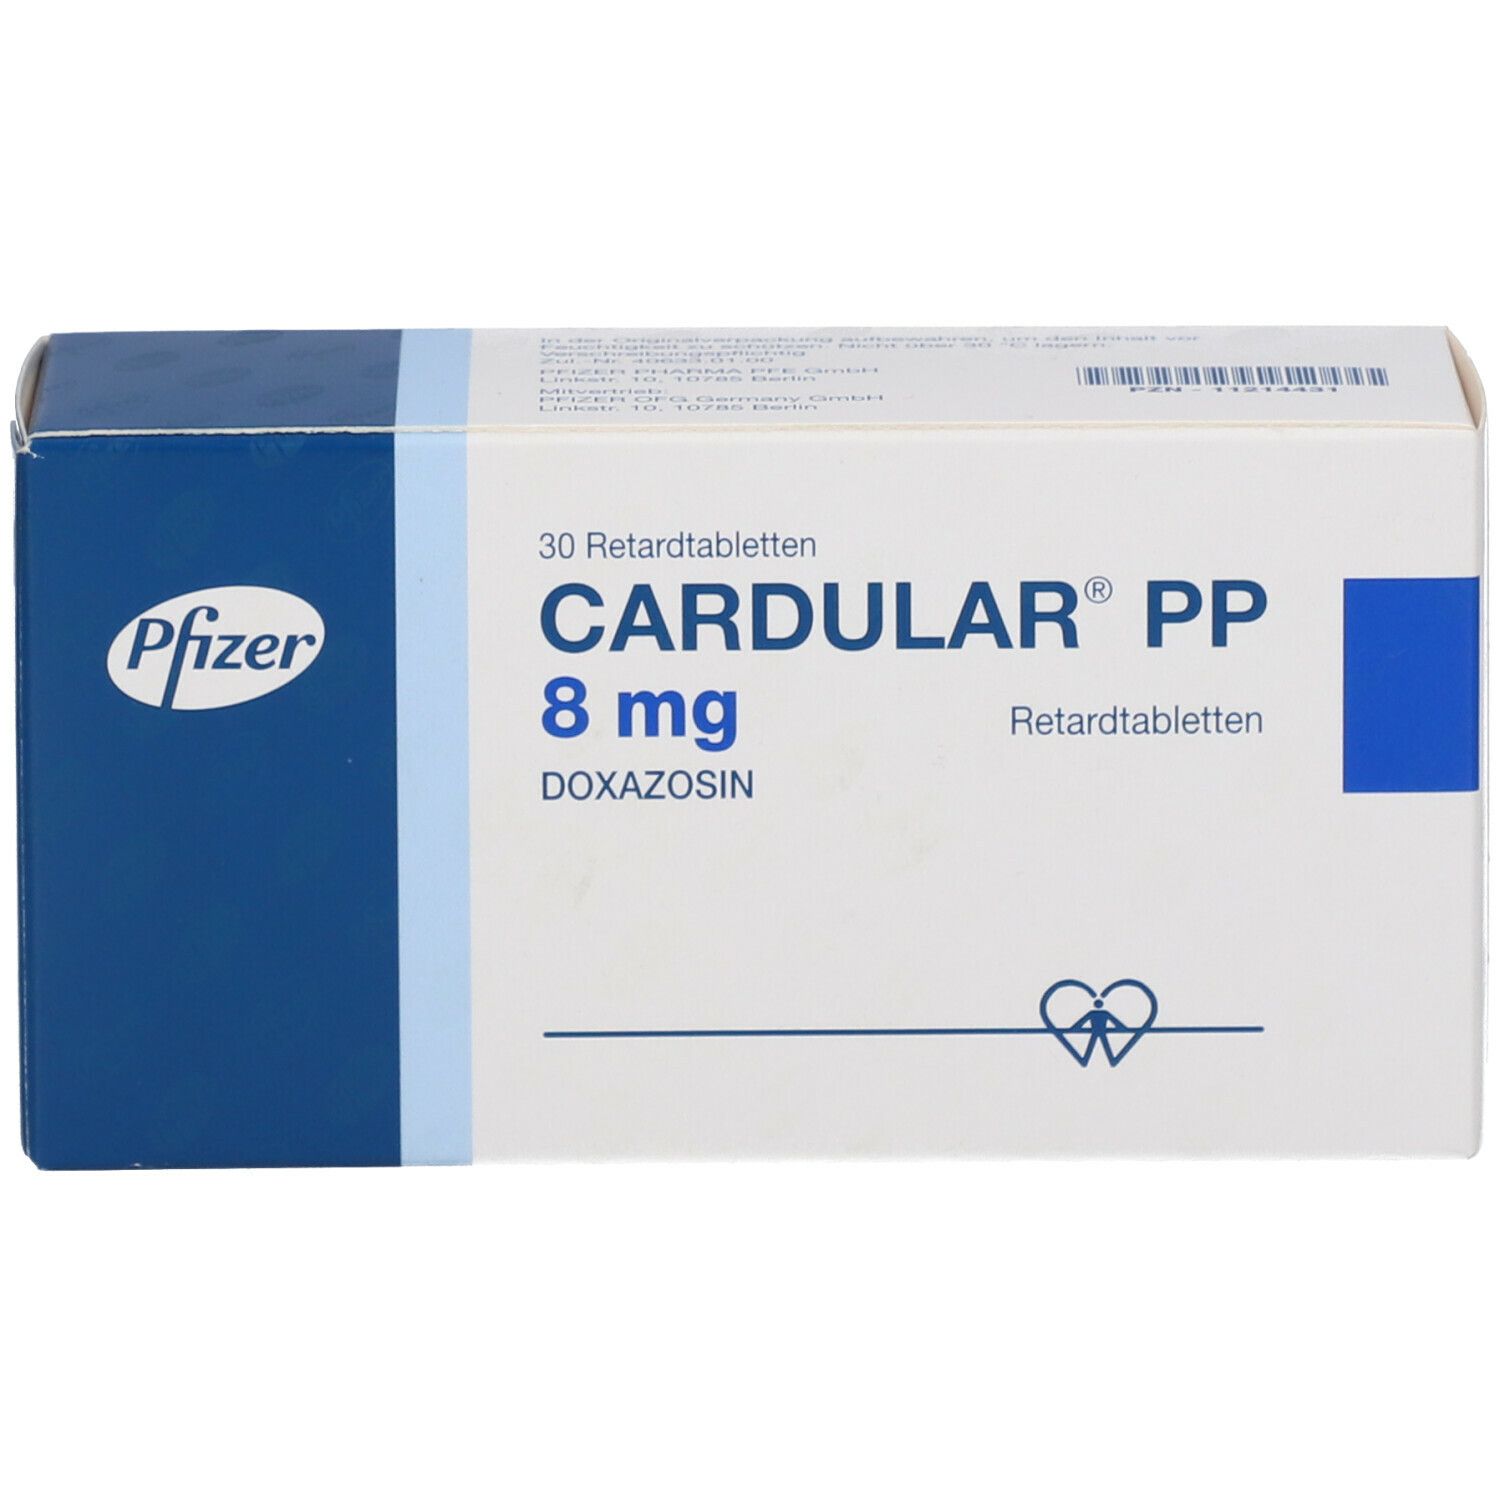 CARDULAR PP 8 mg Retardtabletten